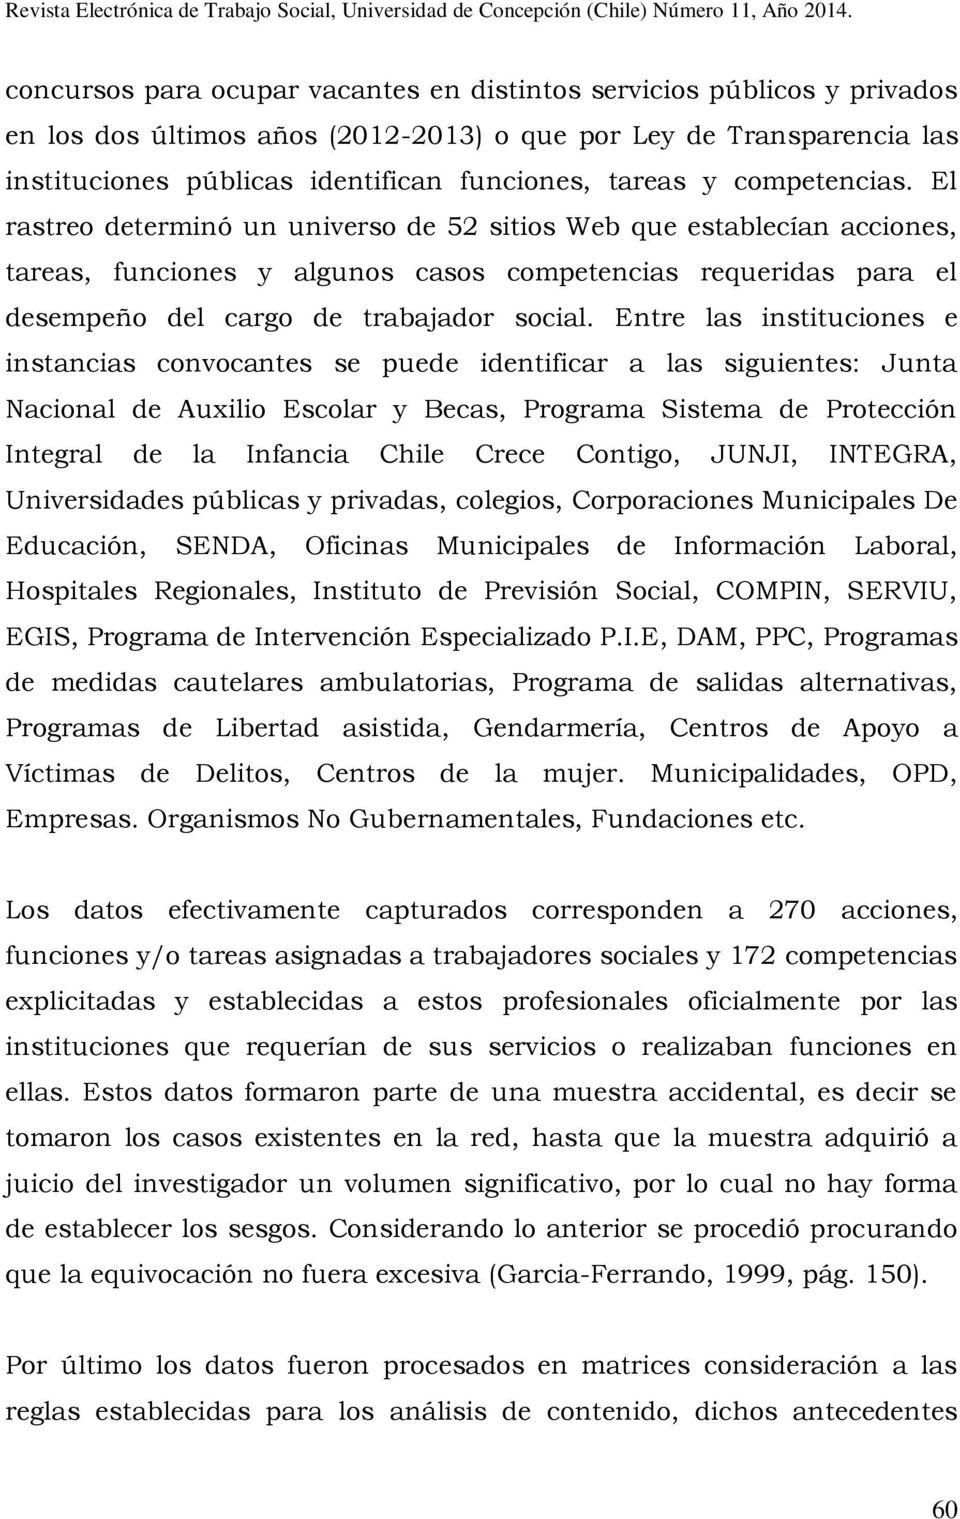 Entre las instituciones e instancias convocantes se puede identificar a las siguientes: Junta Nacional de Auxilio Escolar y Becas, Programa Sistema de Protección Integral de la Infancia Chile Crece